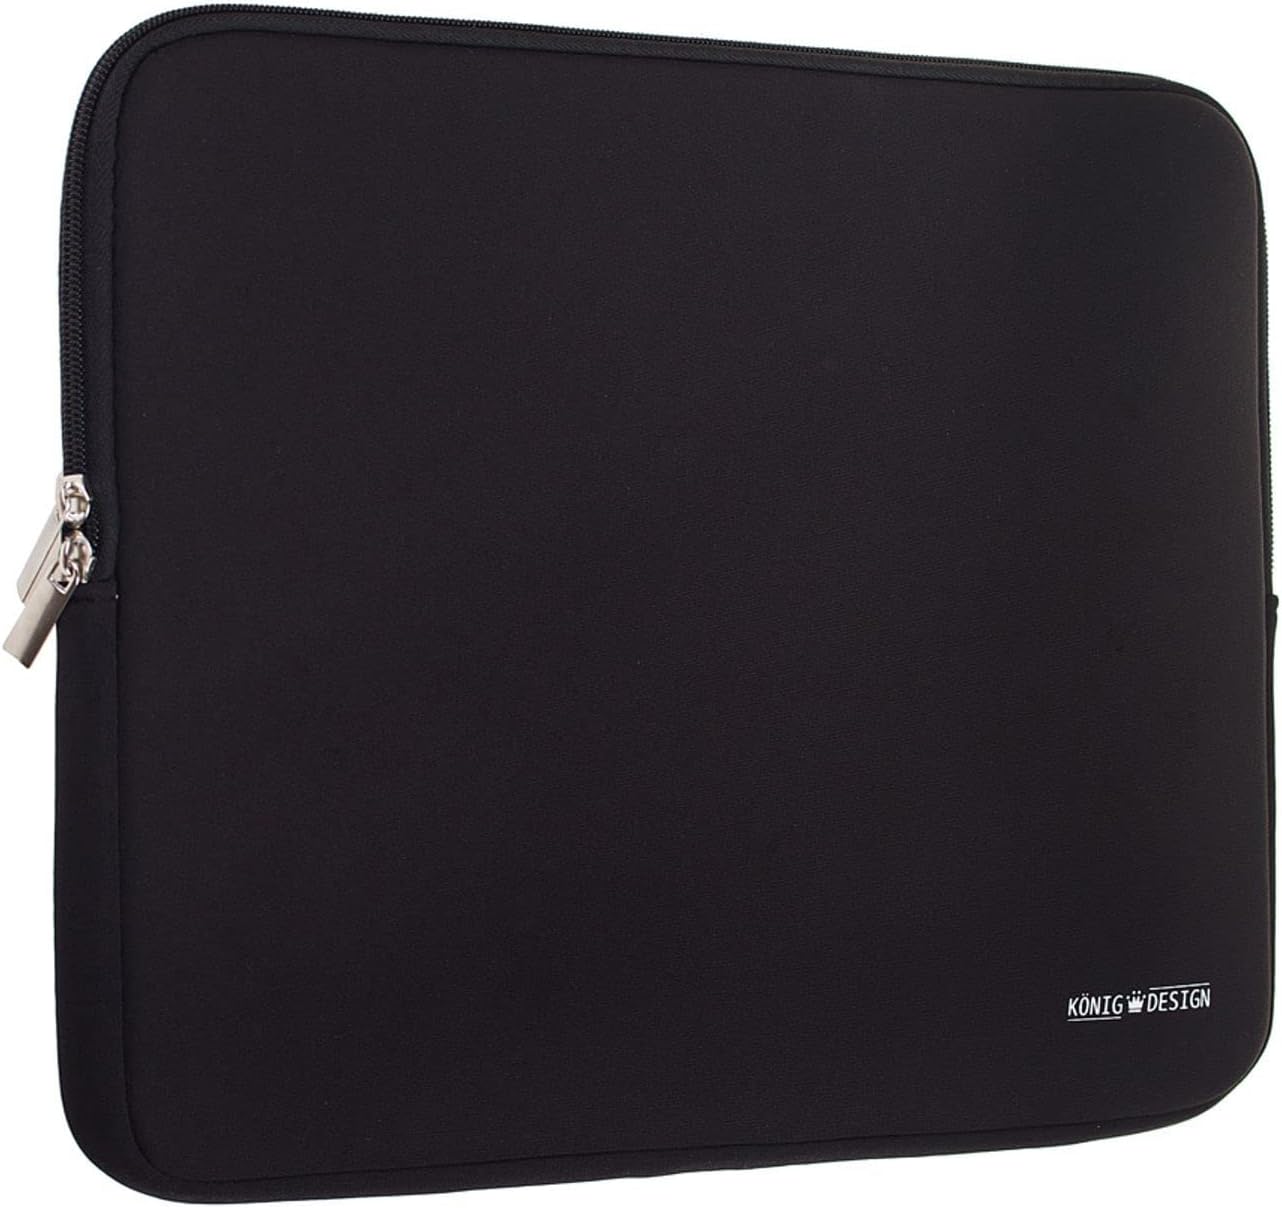 König Design Laptop Bag Laptop Sleeve 15 Inch Shockproof Notebook Bag Laptop Protective Case Notebook Sleeve Case PC Laptop Protective Bag Black